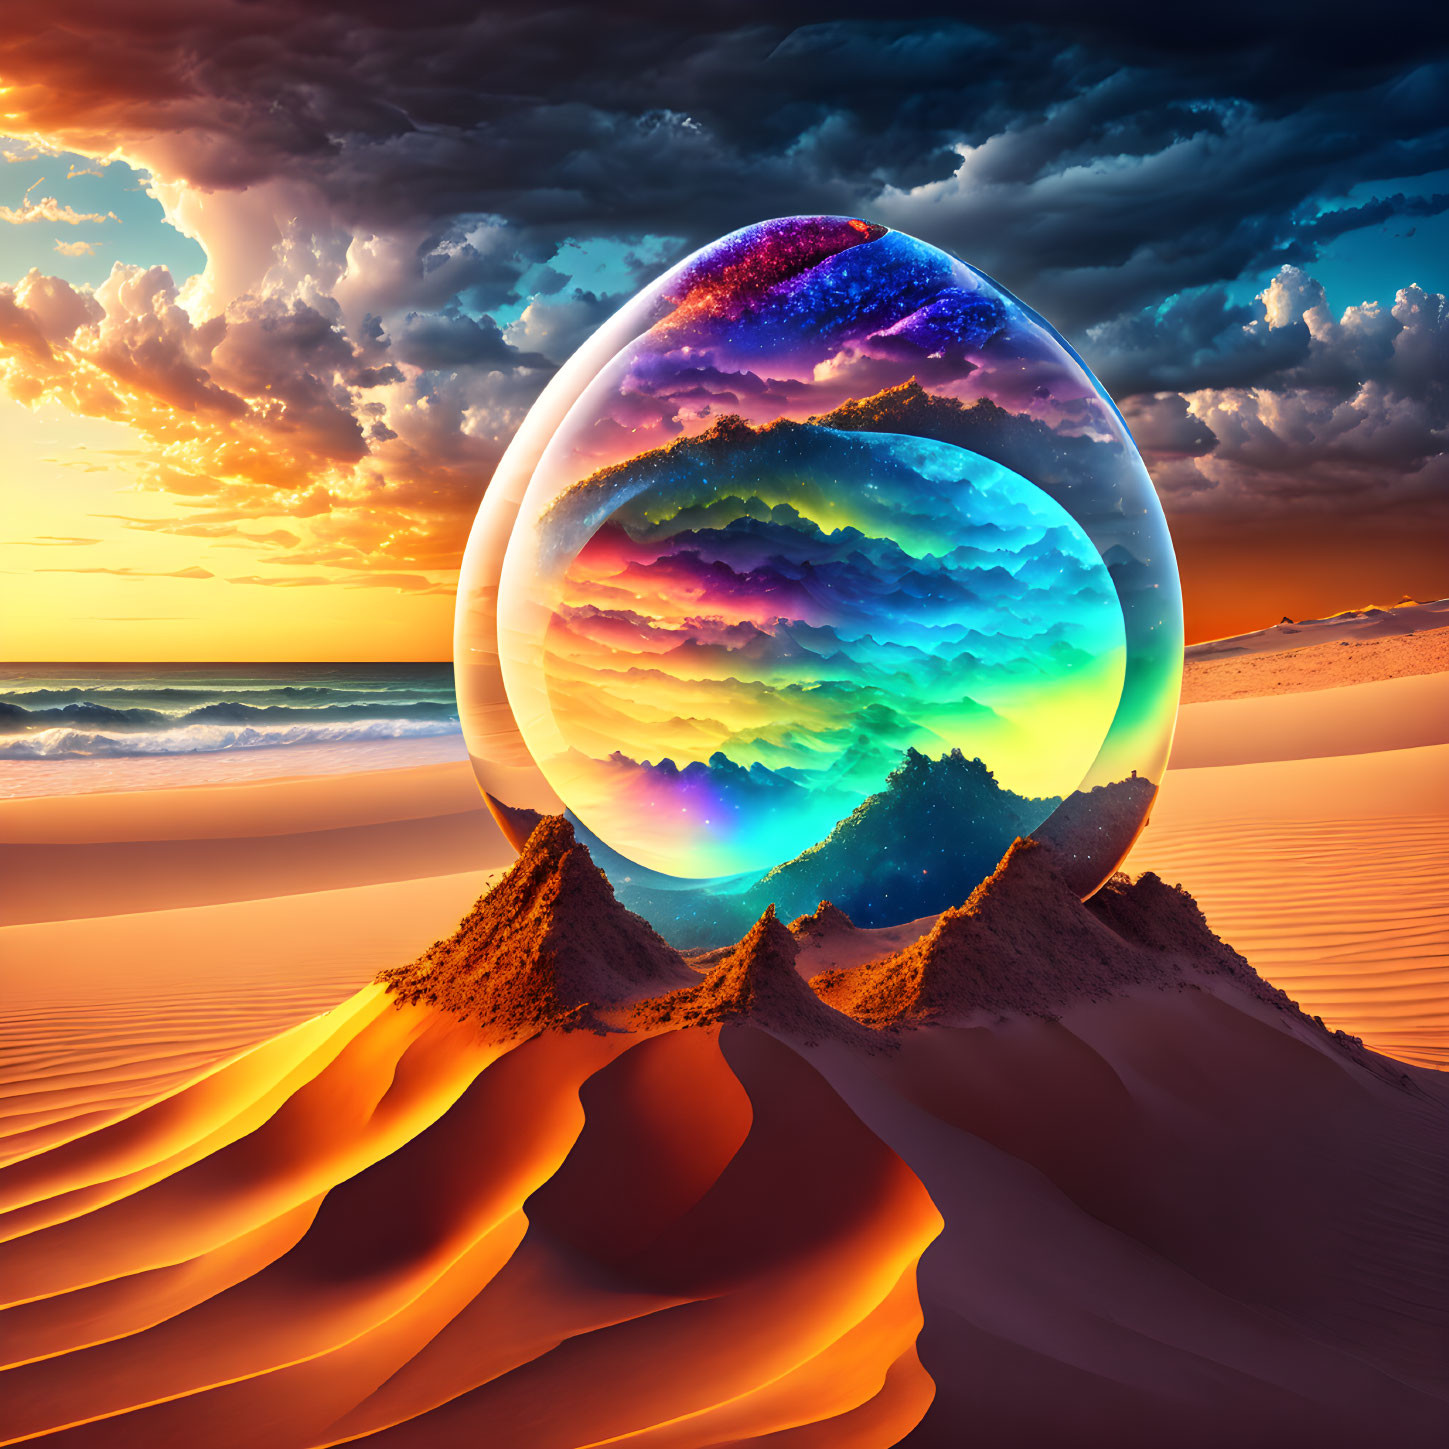 Colorful cosmic egg on desert dunes under sunset sky